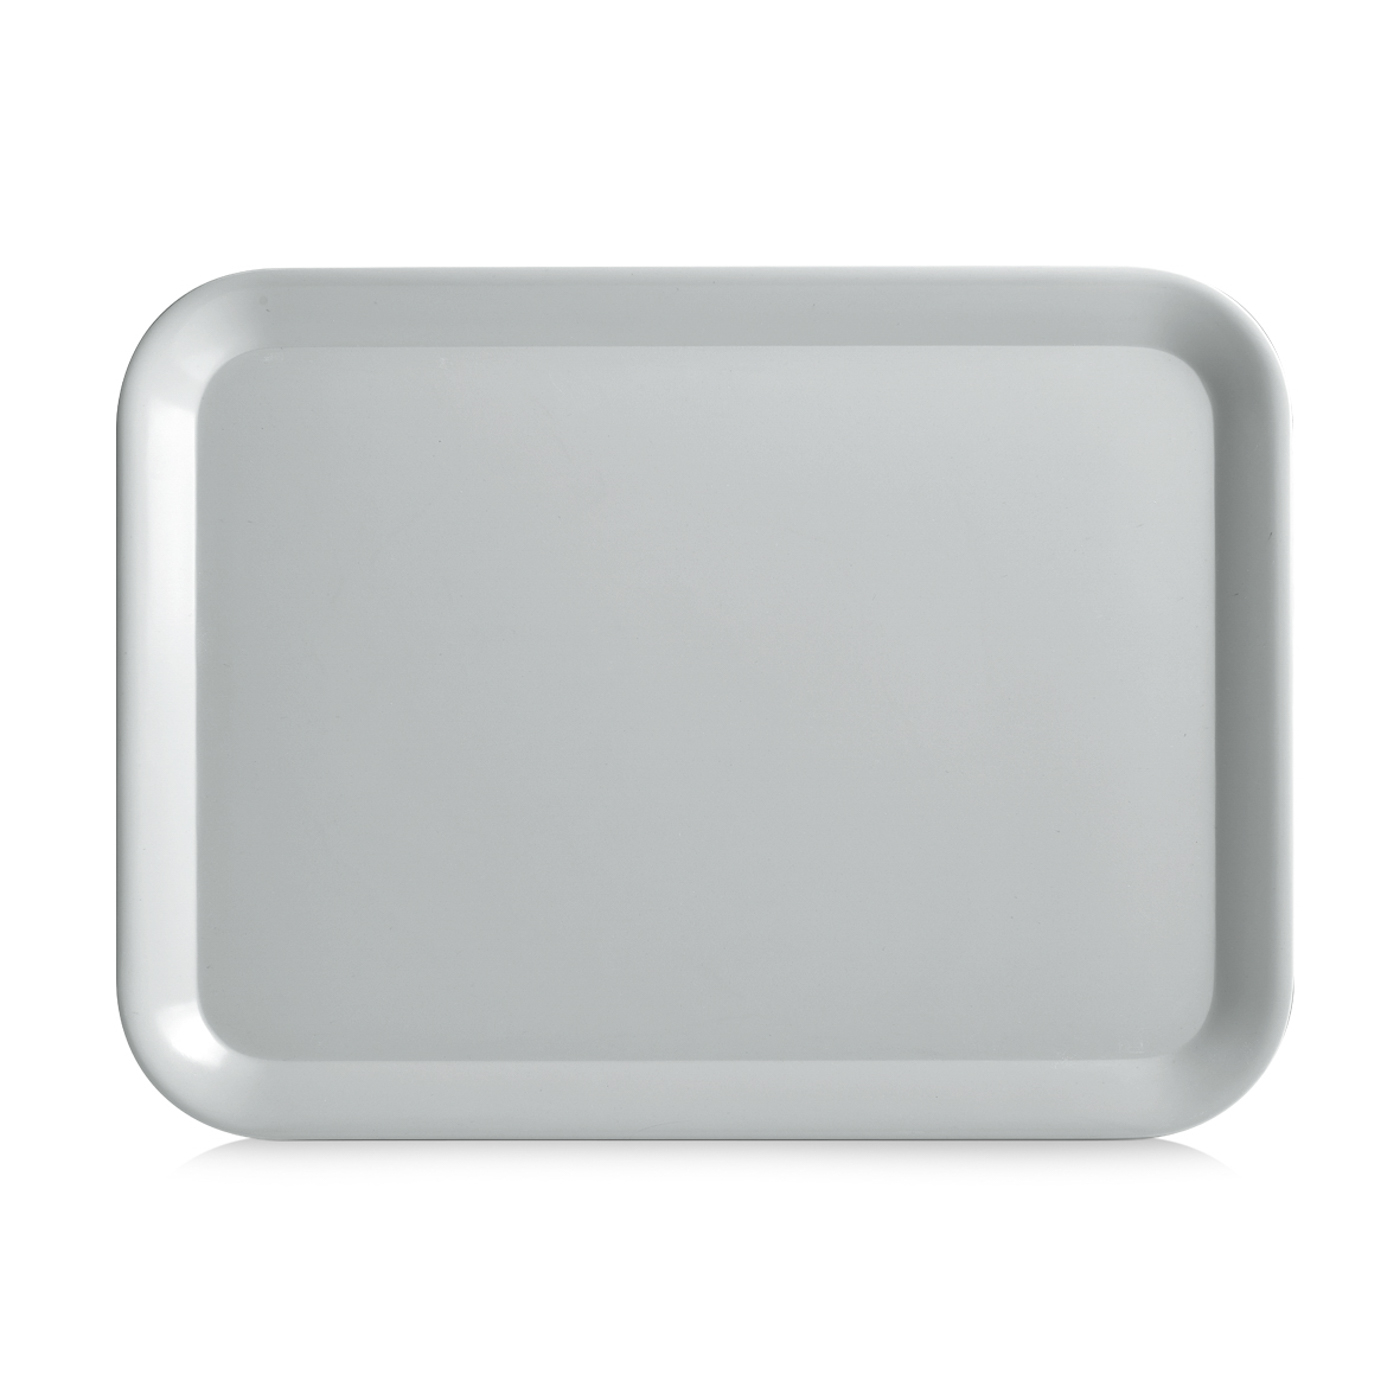 Tablett MISTRAL, Farbe: taupe, Grösse: 43,5 x 32,5 cm,